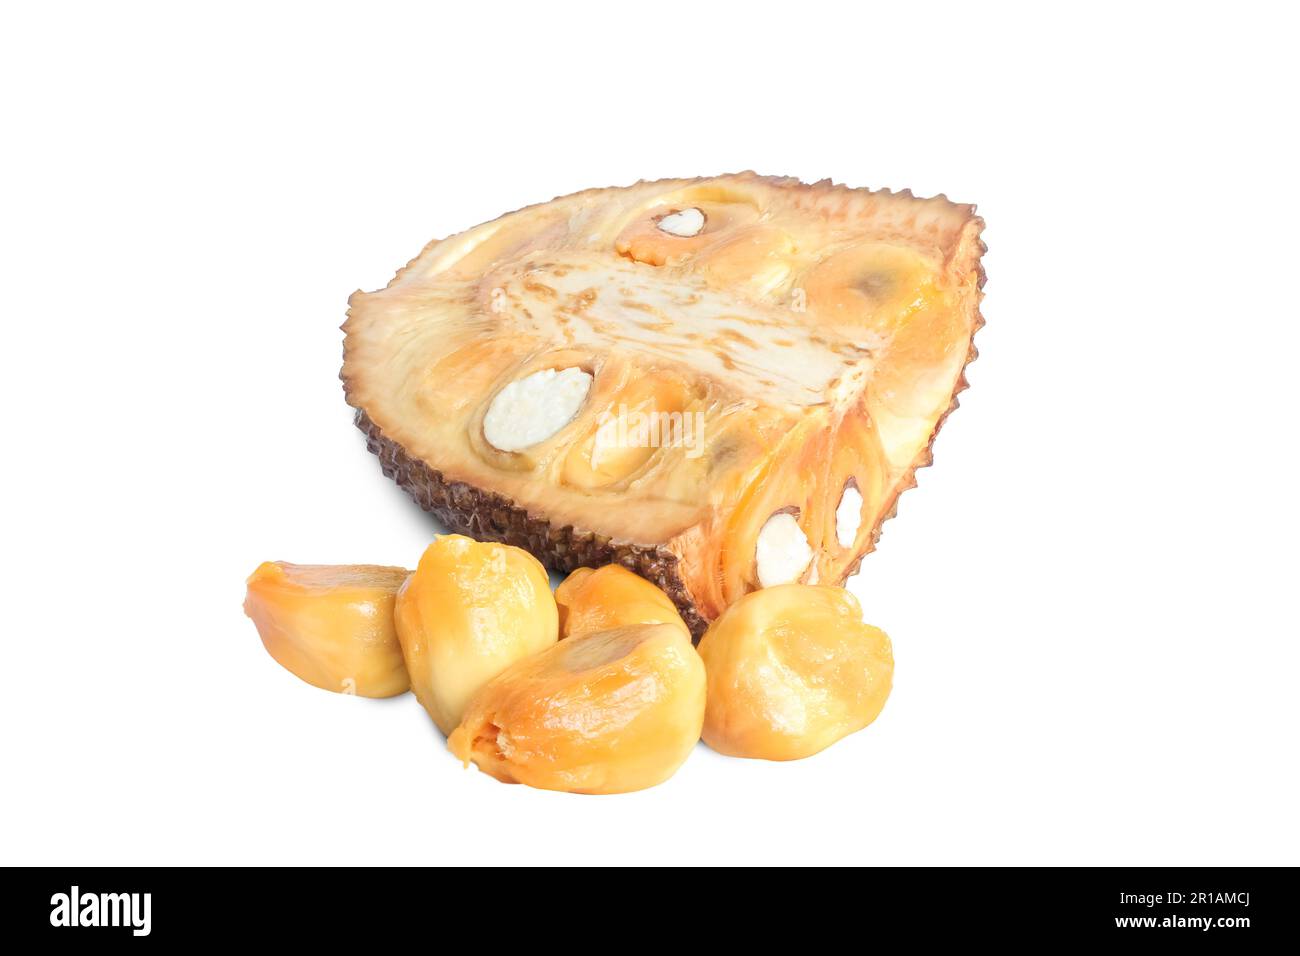 Jackfruit or campedak isolated on white background Stock Photo